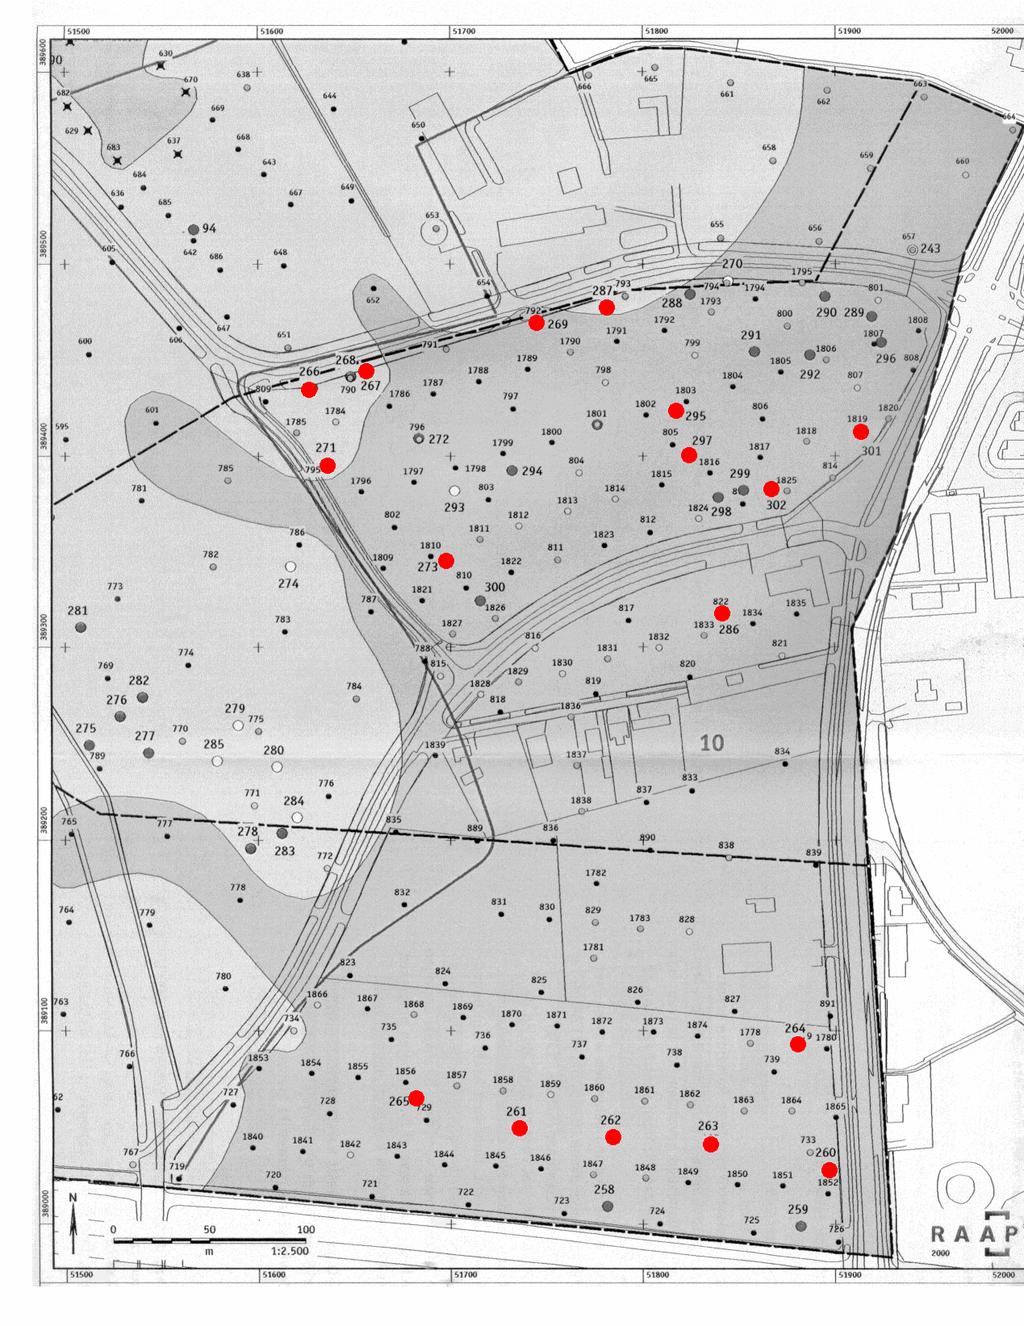 Afbeelding 6. SOB Research-bewerking van detailkaart Vindplaats 10, resultaten archeologisch onderzoek (origineel naar Schute e. a.: 2001, figuur 14).